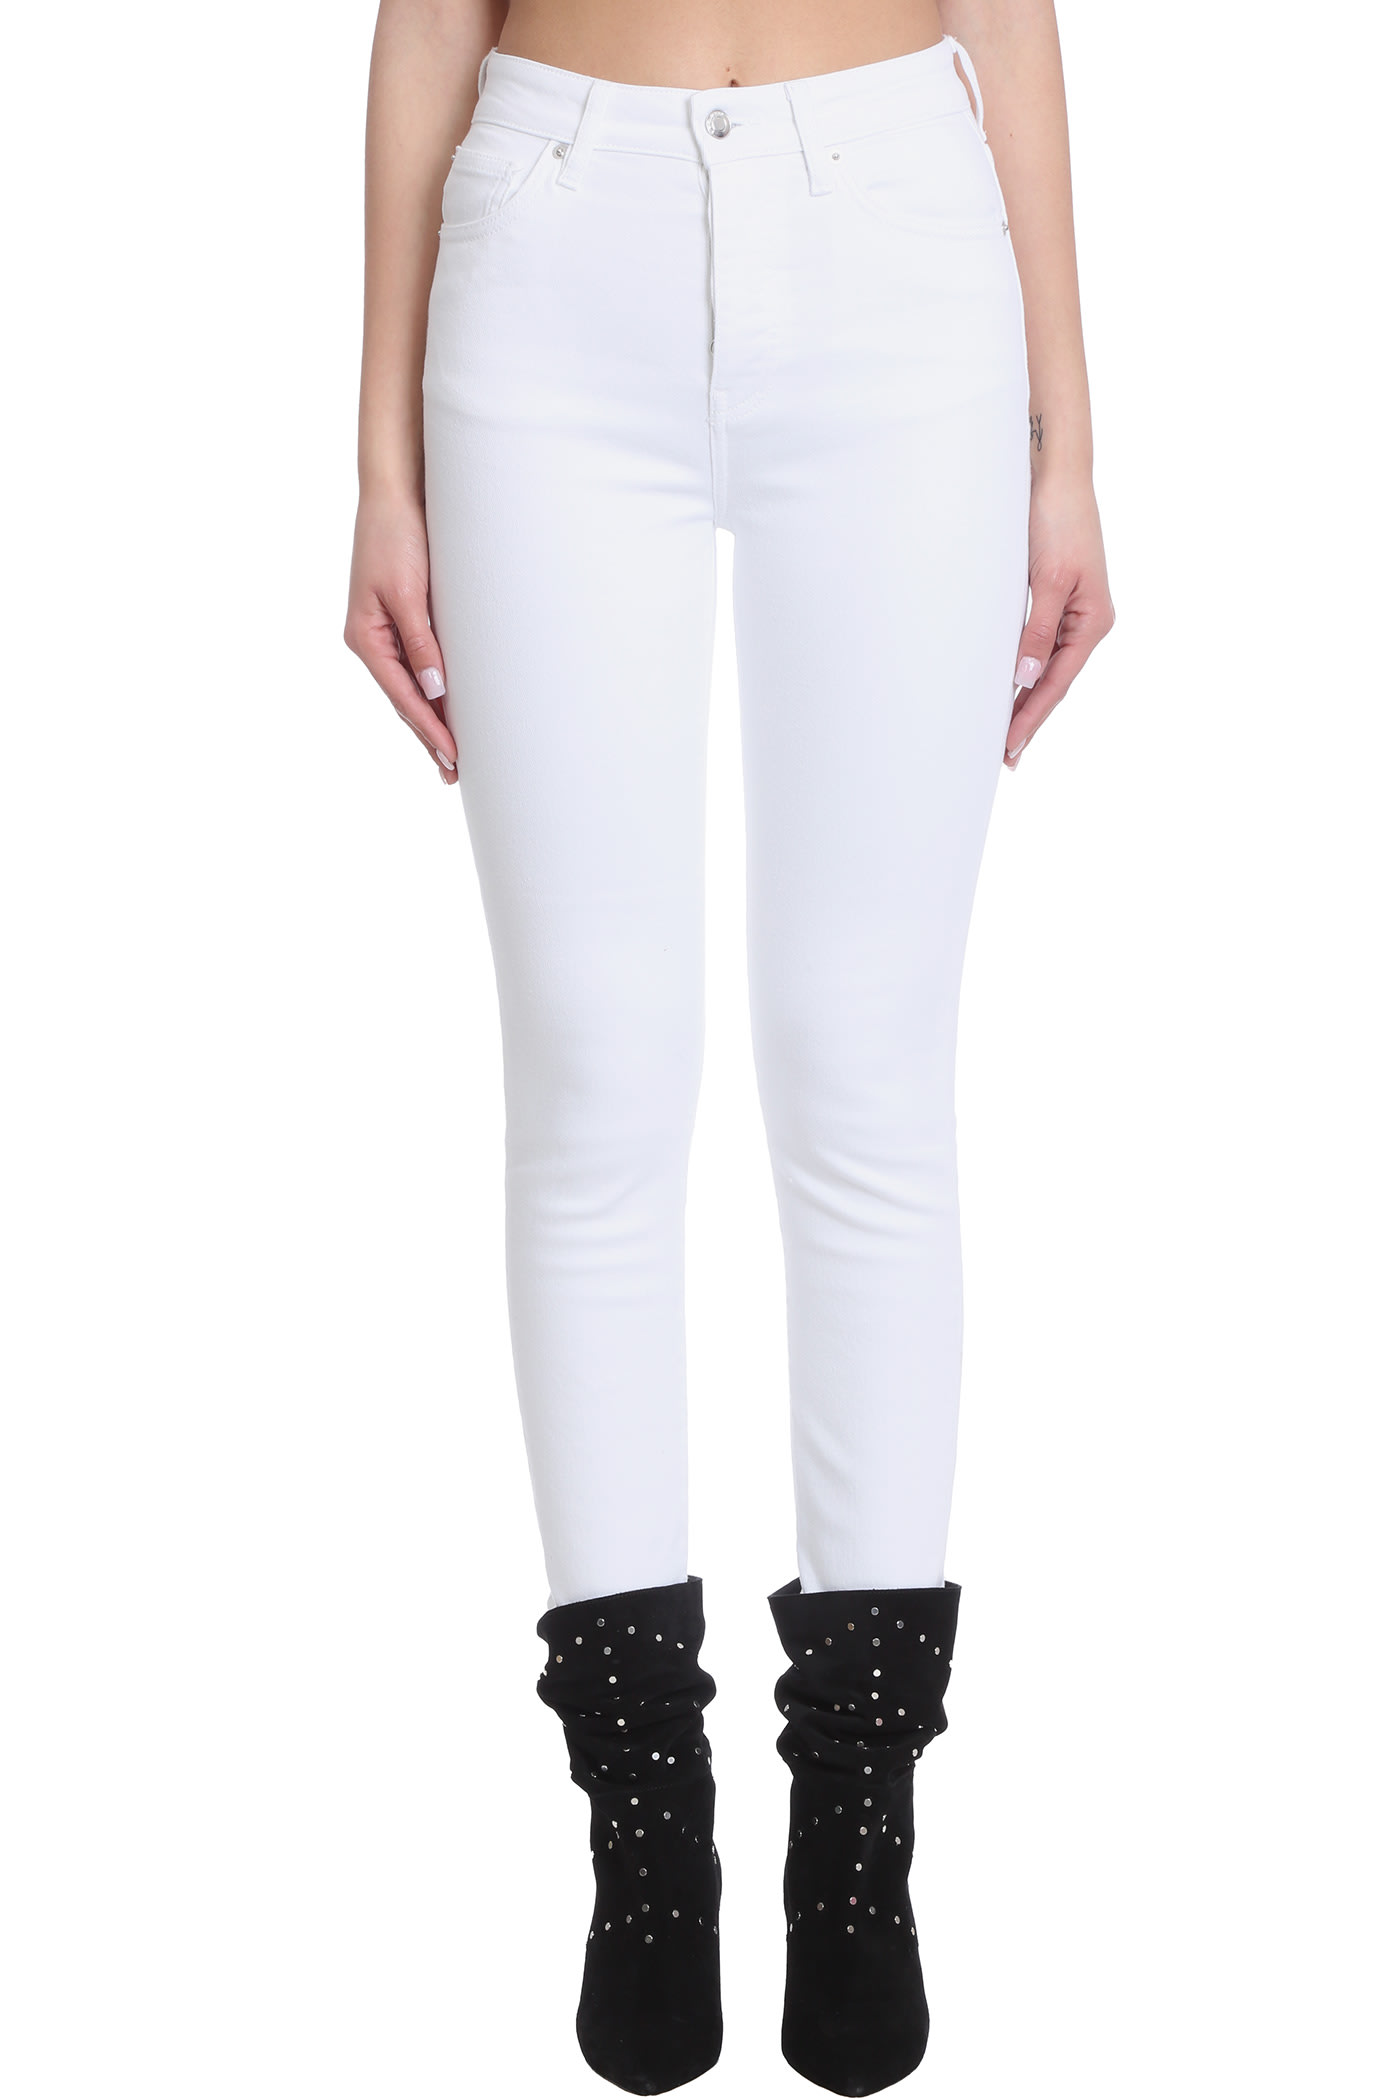 IRO Gallowa Jeans In White Denim